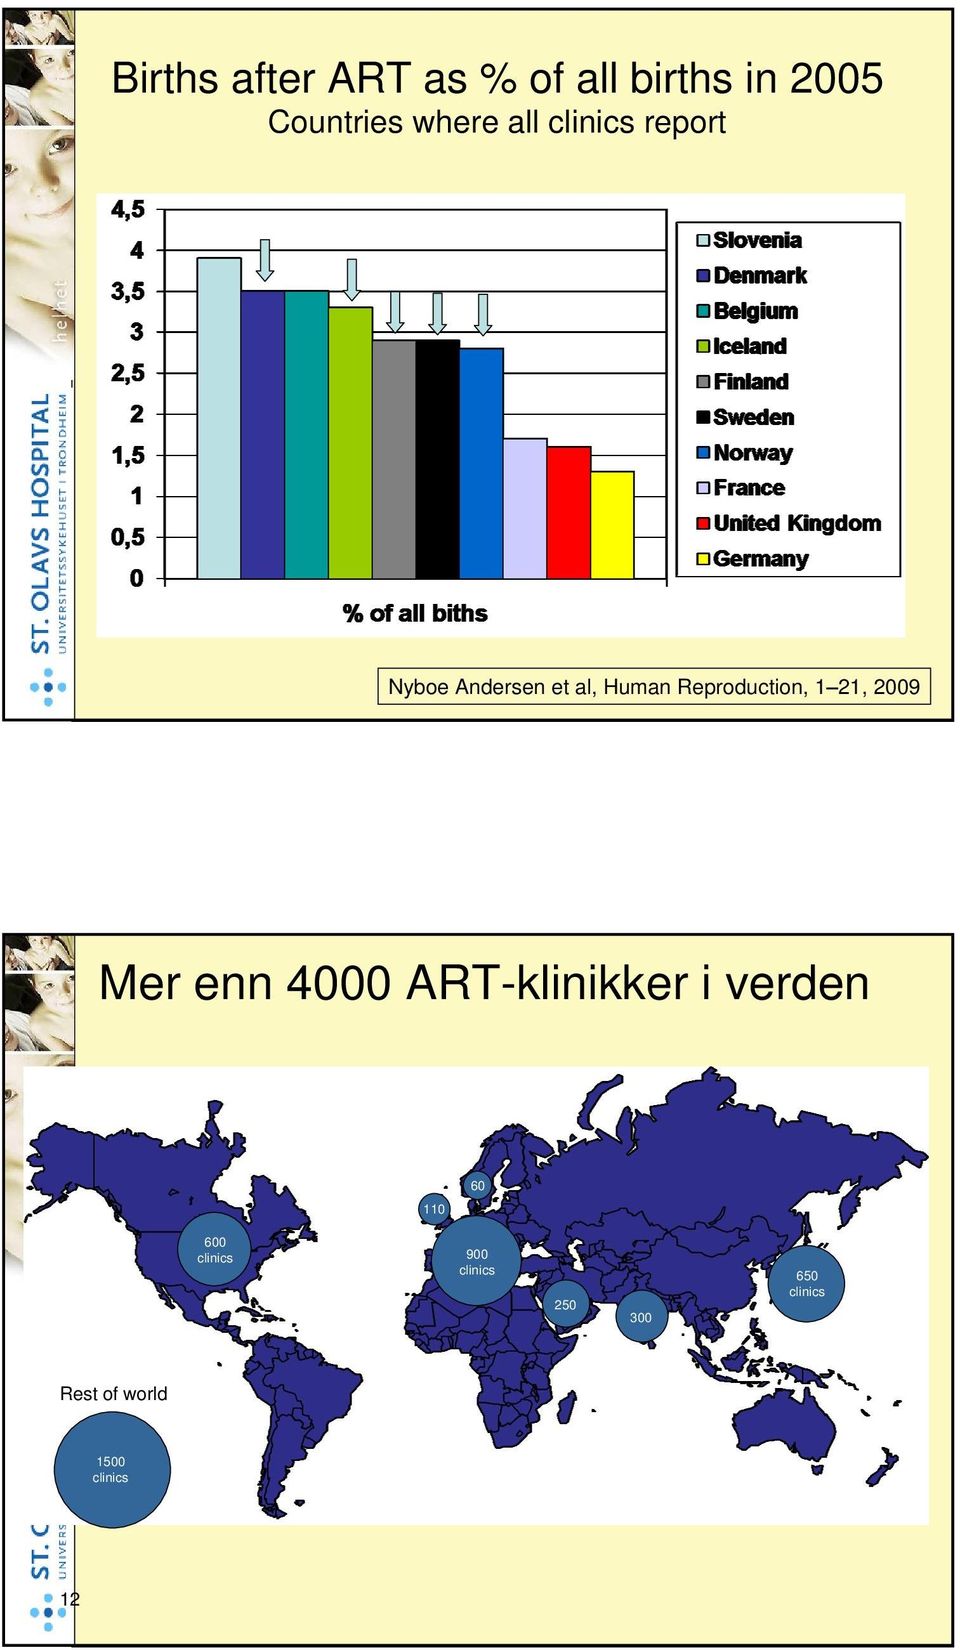 1 21, 2009 Mer enn 4000 ART-klinikker i verden 110 60 600